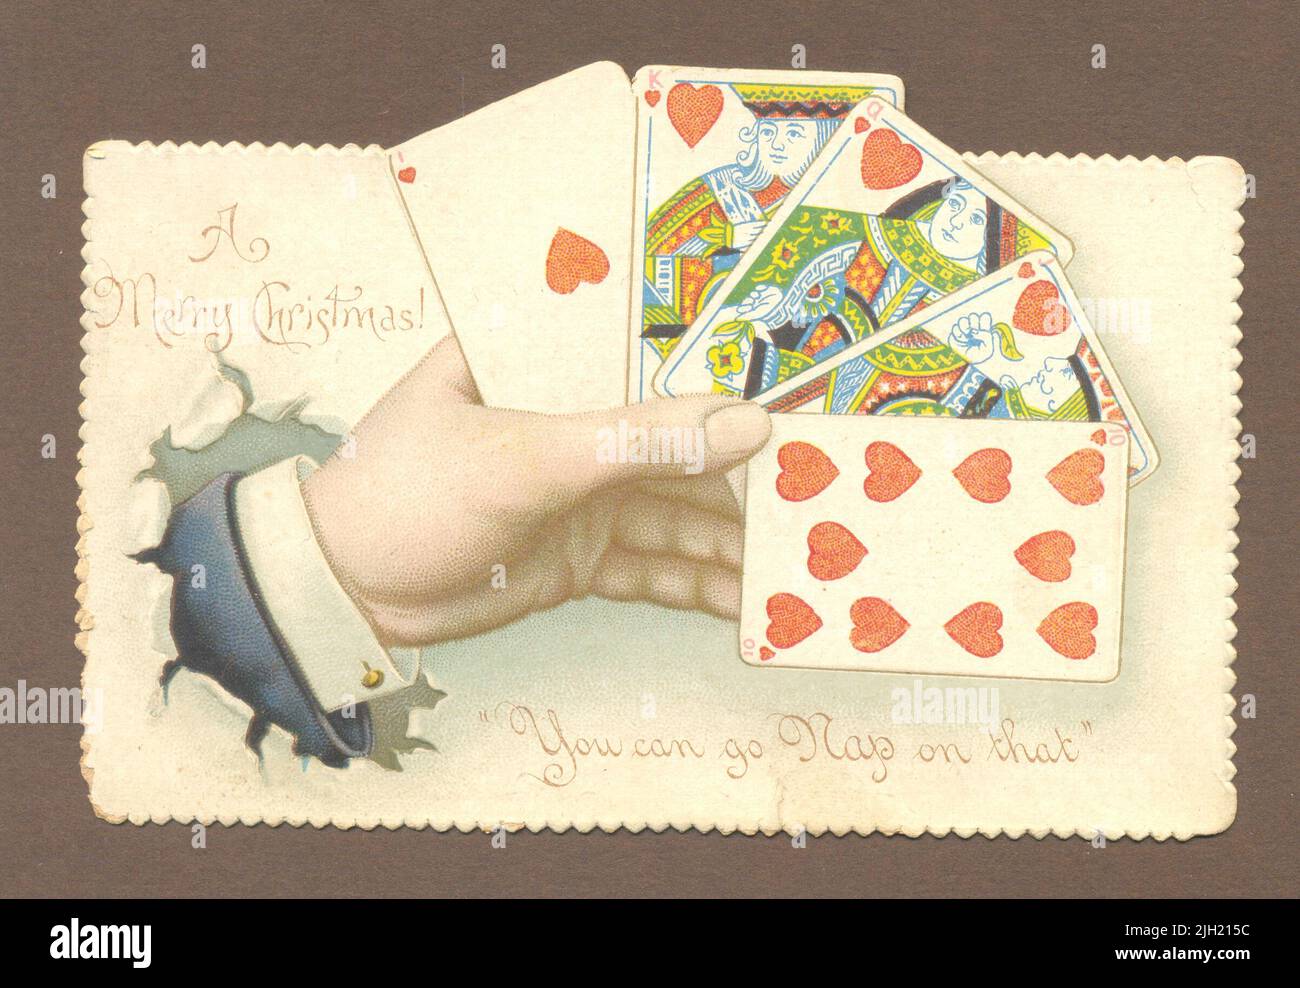 Chromolithographiée, coupée en dés, punning carte de vœux de Noël montrant une main de cartes à jouer vers 1898 Banque D'Images